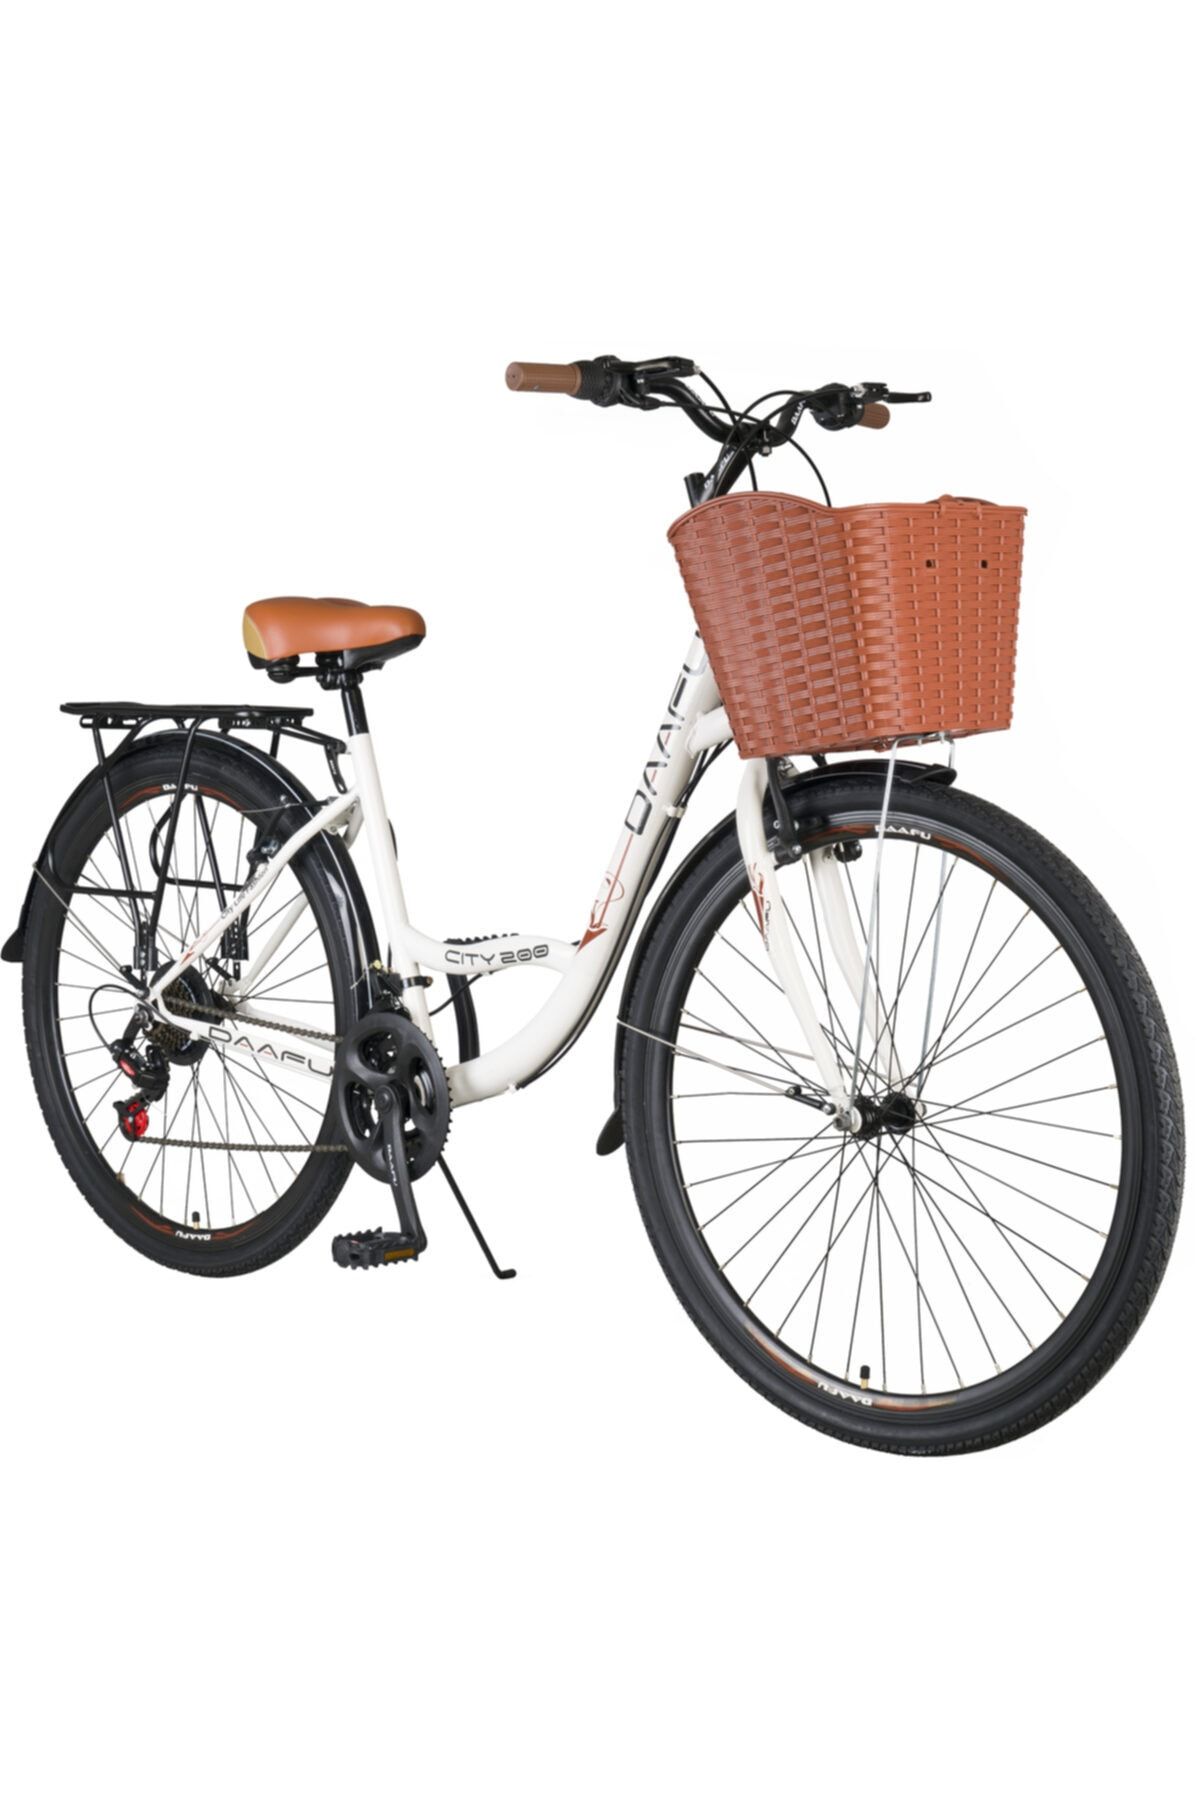 Orbis Daafu City 200 Microshift 26 Jant Bisiklet 21 Vites Bayan Şehir Bisikleti